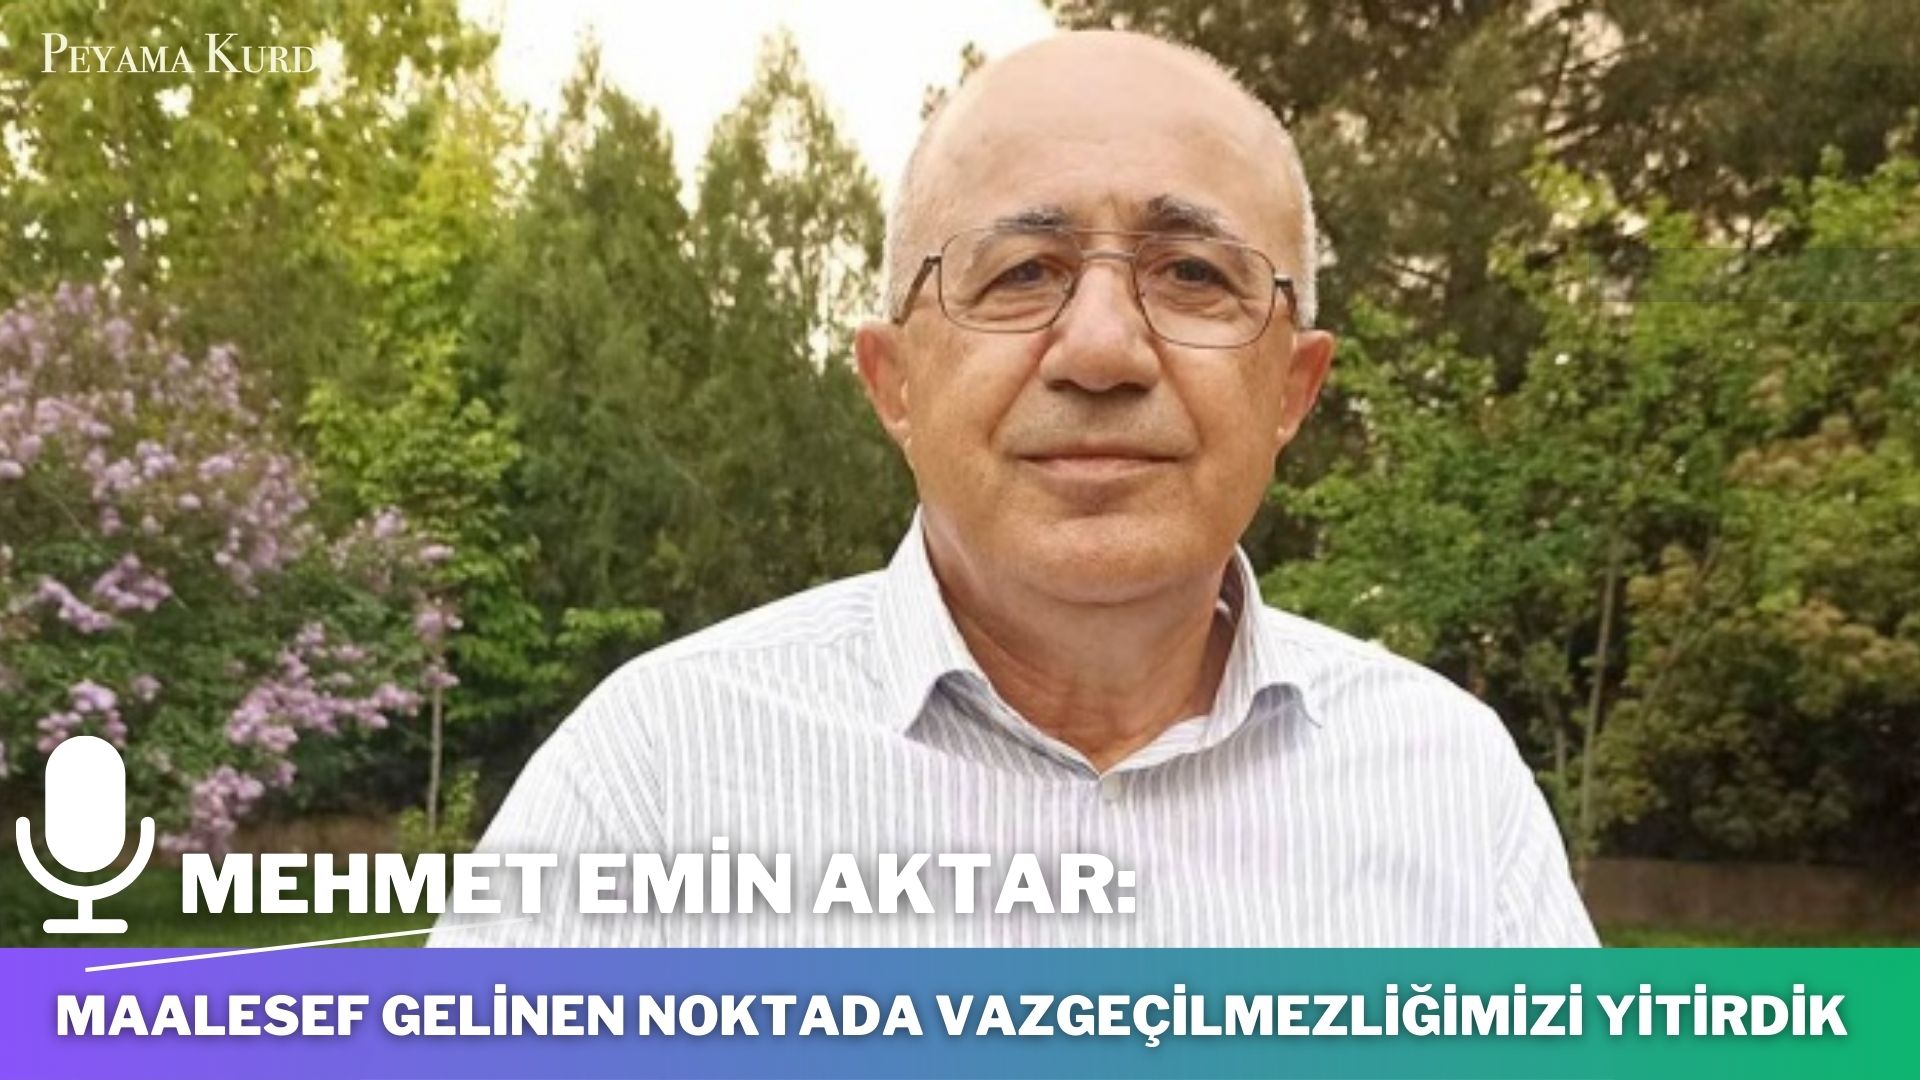 RÖPORTAJ | M.Emin Aktar: “Kürt siyaseti, kendini yeniden gözden geçirmelidir”